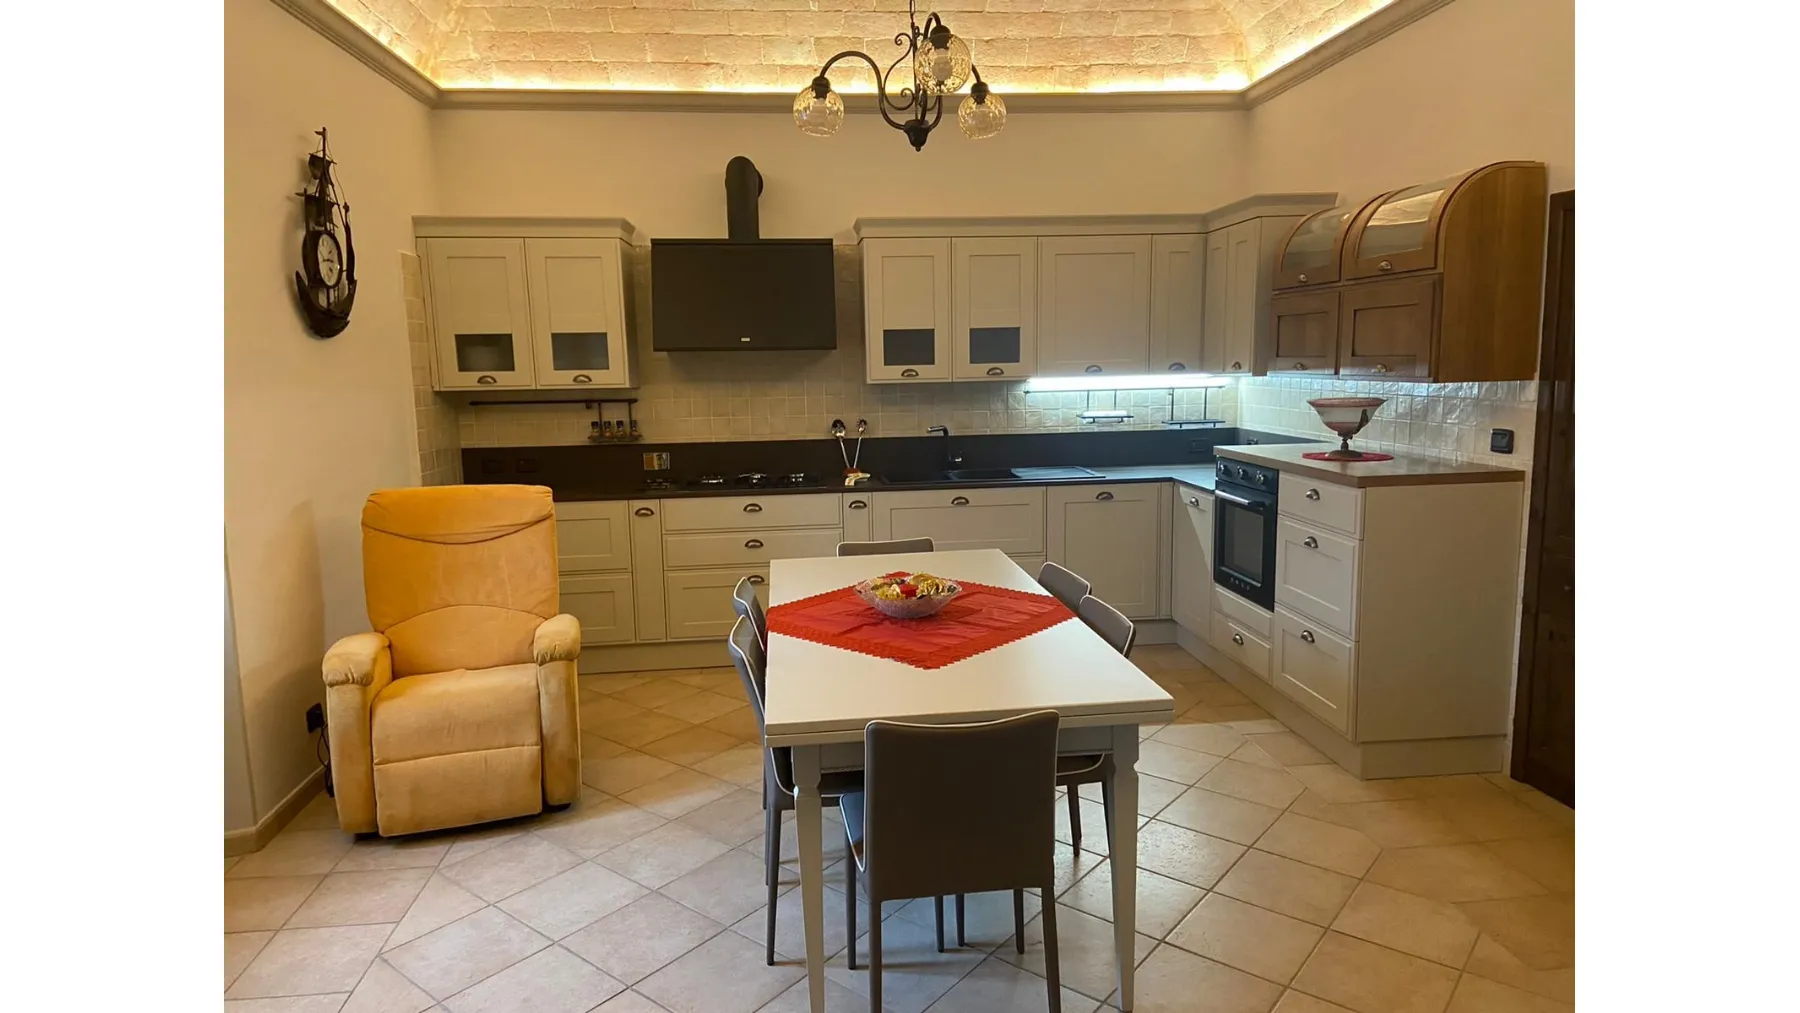 Progetto di cucina in stile, casa privata San Venzano (TR)